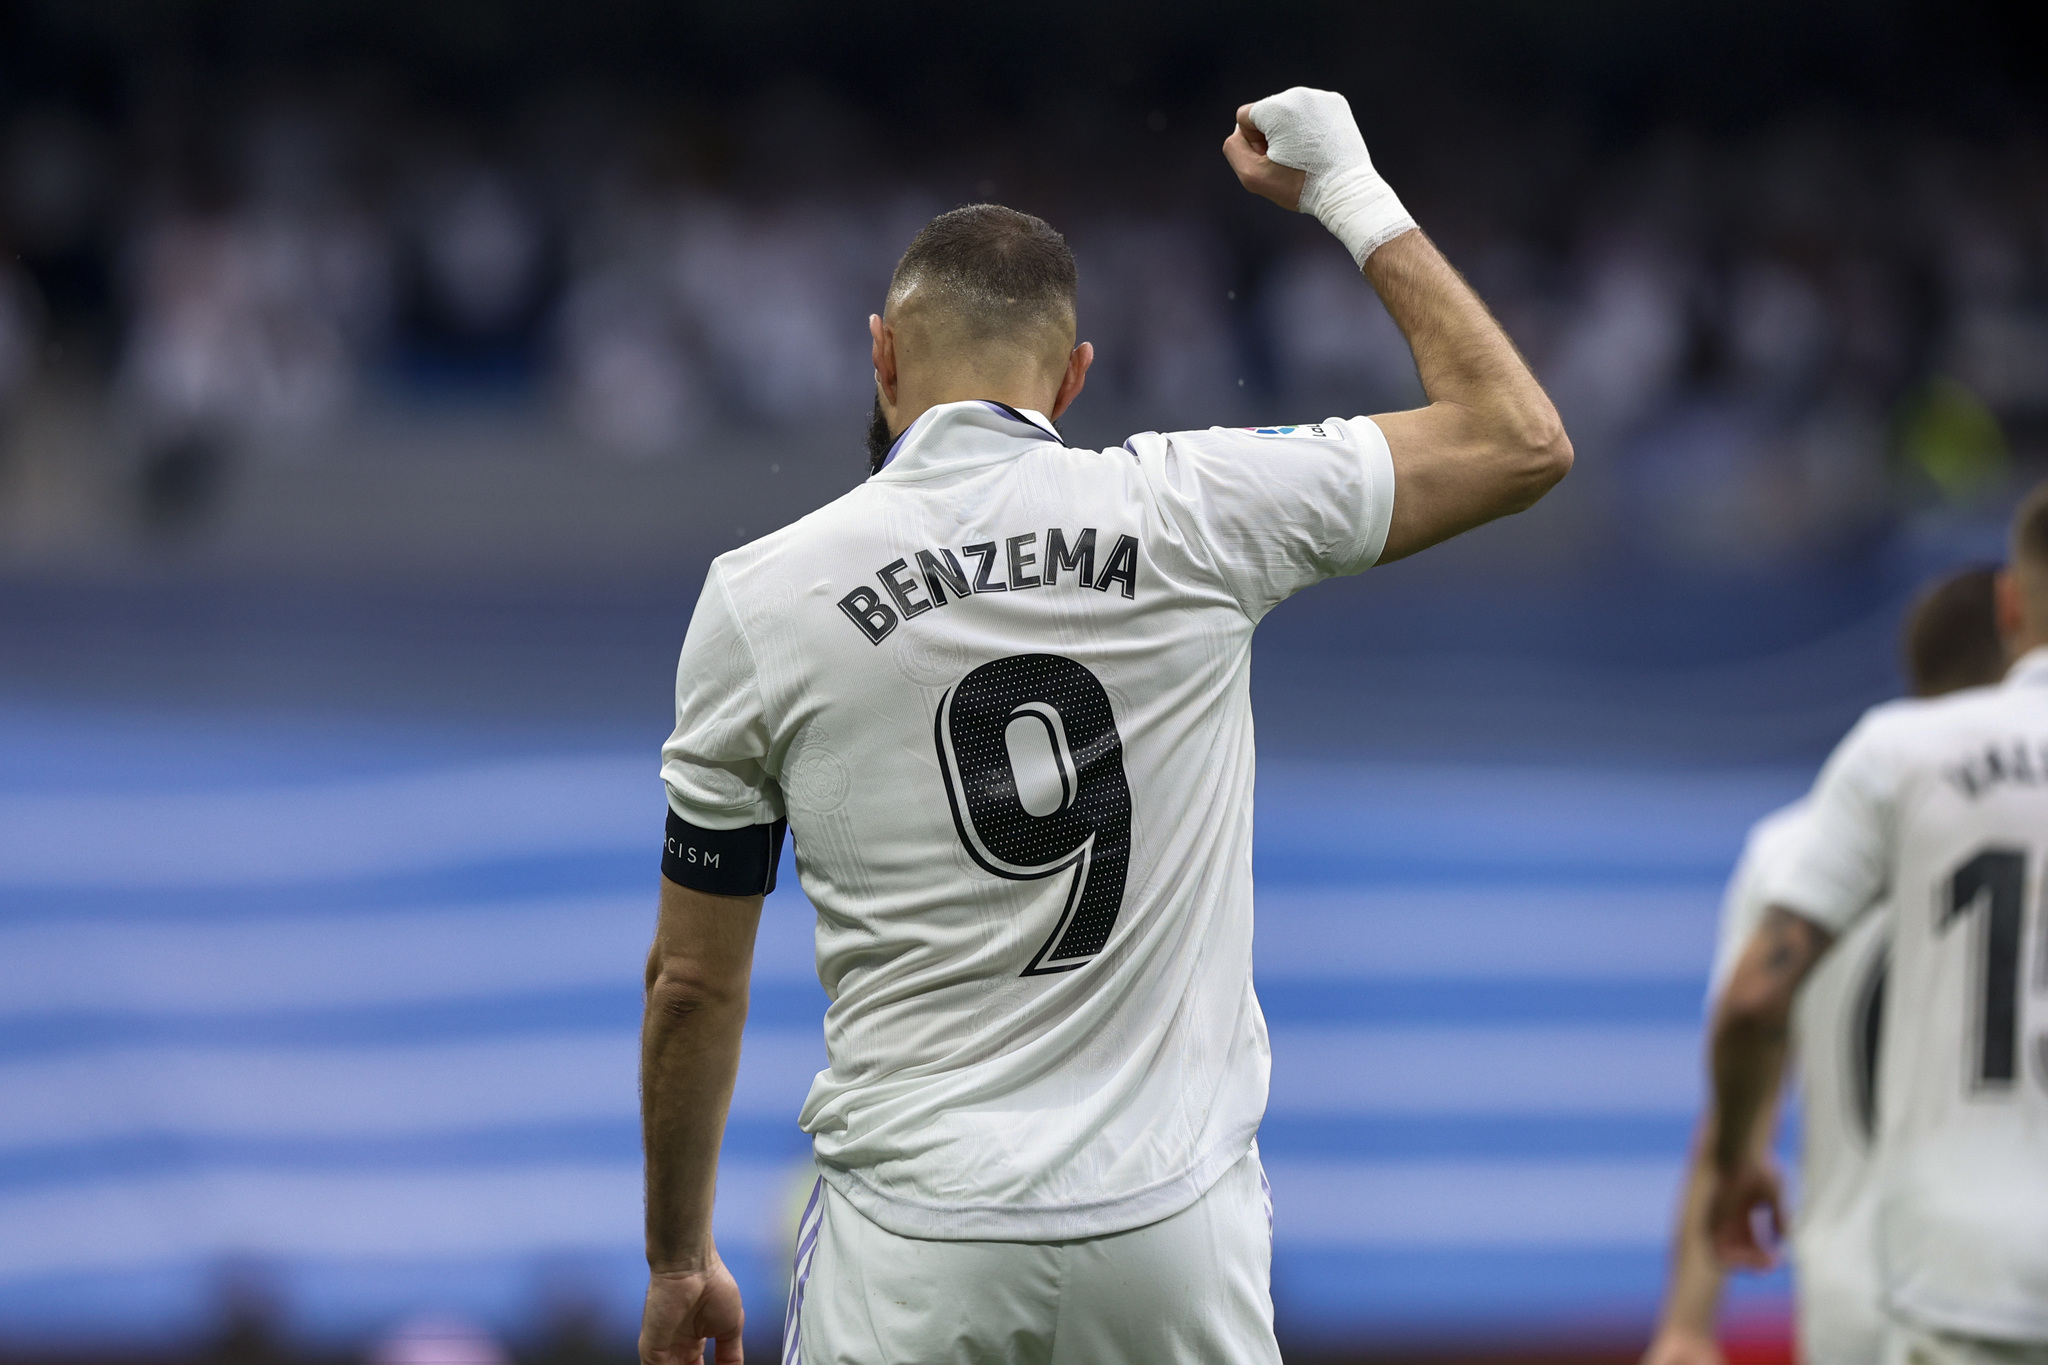 Palmarés de Benzema con el Real Madrid: cuántos goles y títulos ha ganado Karim con el equipo blanco